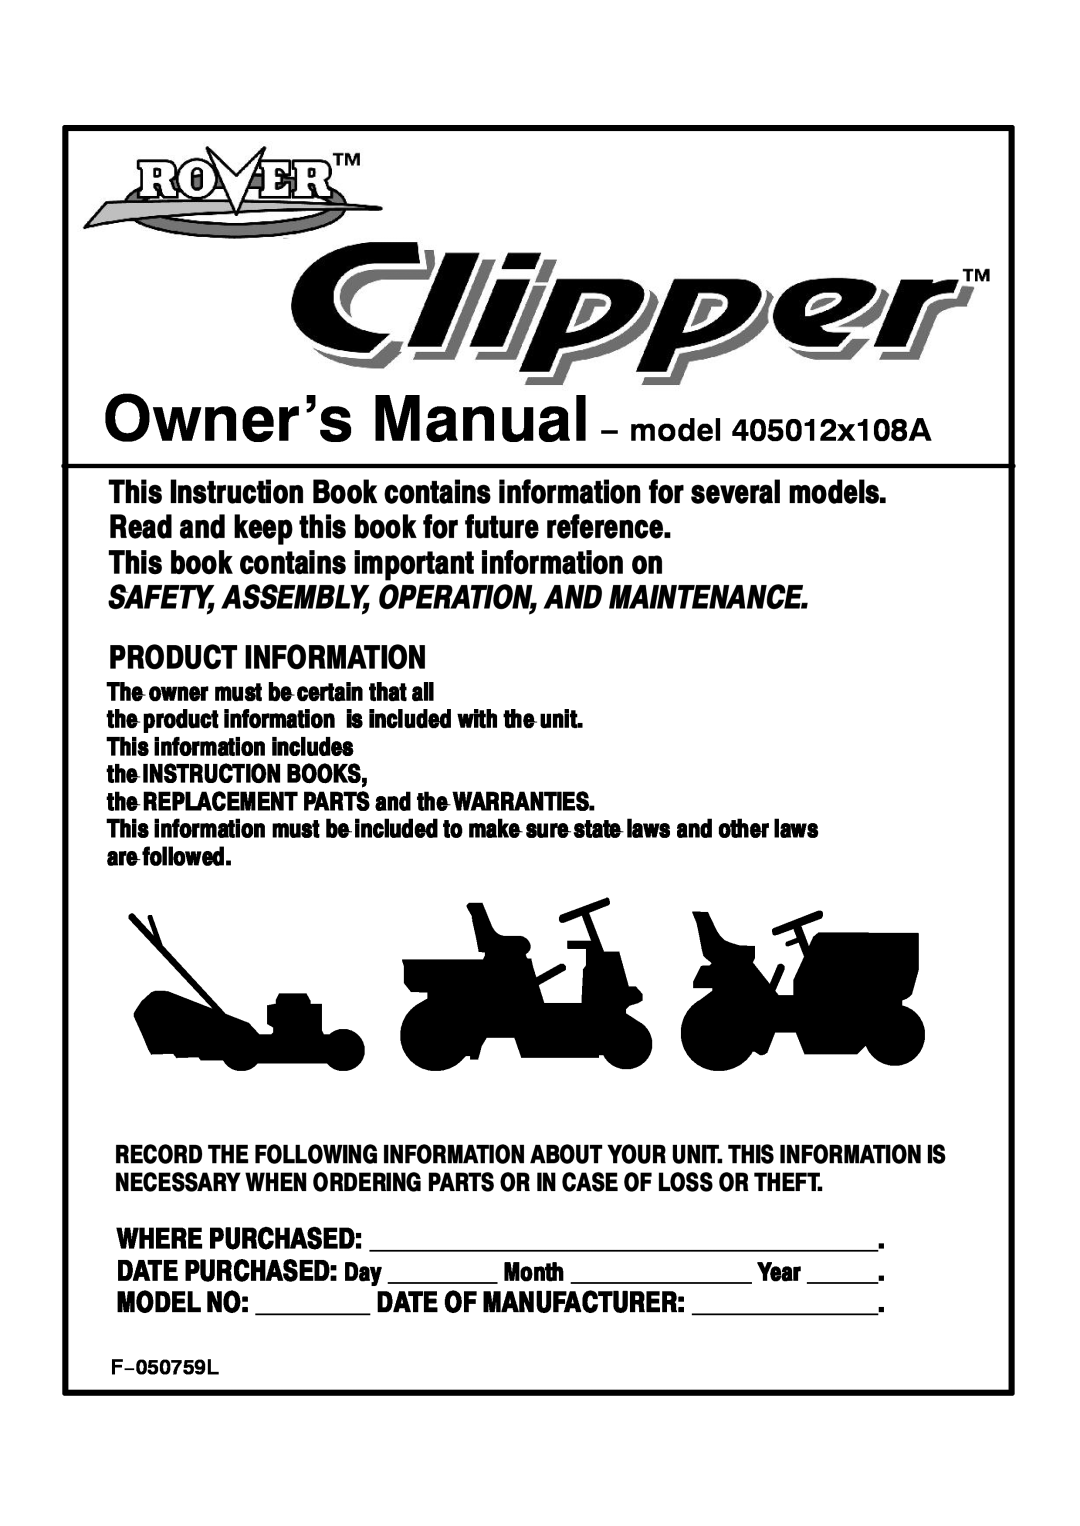 Rover owner manual Owner’s Manual model 405012x108A, Ì¸·- ¾±±µ ½±²¬¿·²- ·³±¬¿²¬ ·²º±³¿¬·±² ±², ÜßÌÛ ÐËÎÝØßÍÛÜæ Ü¿§ 